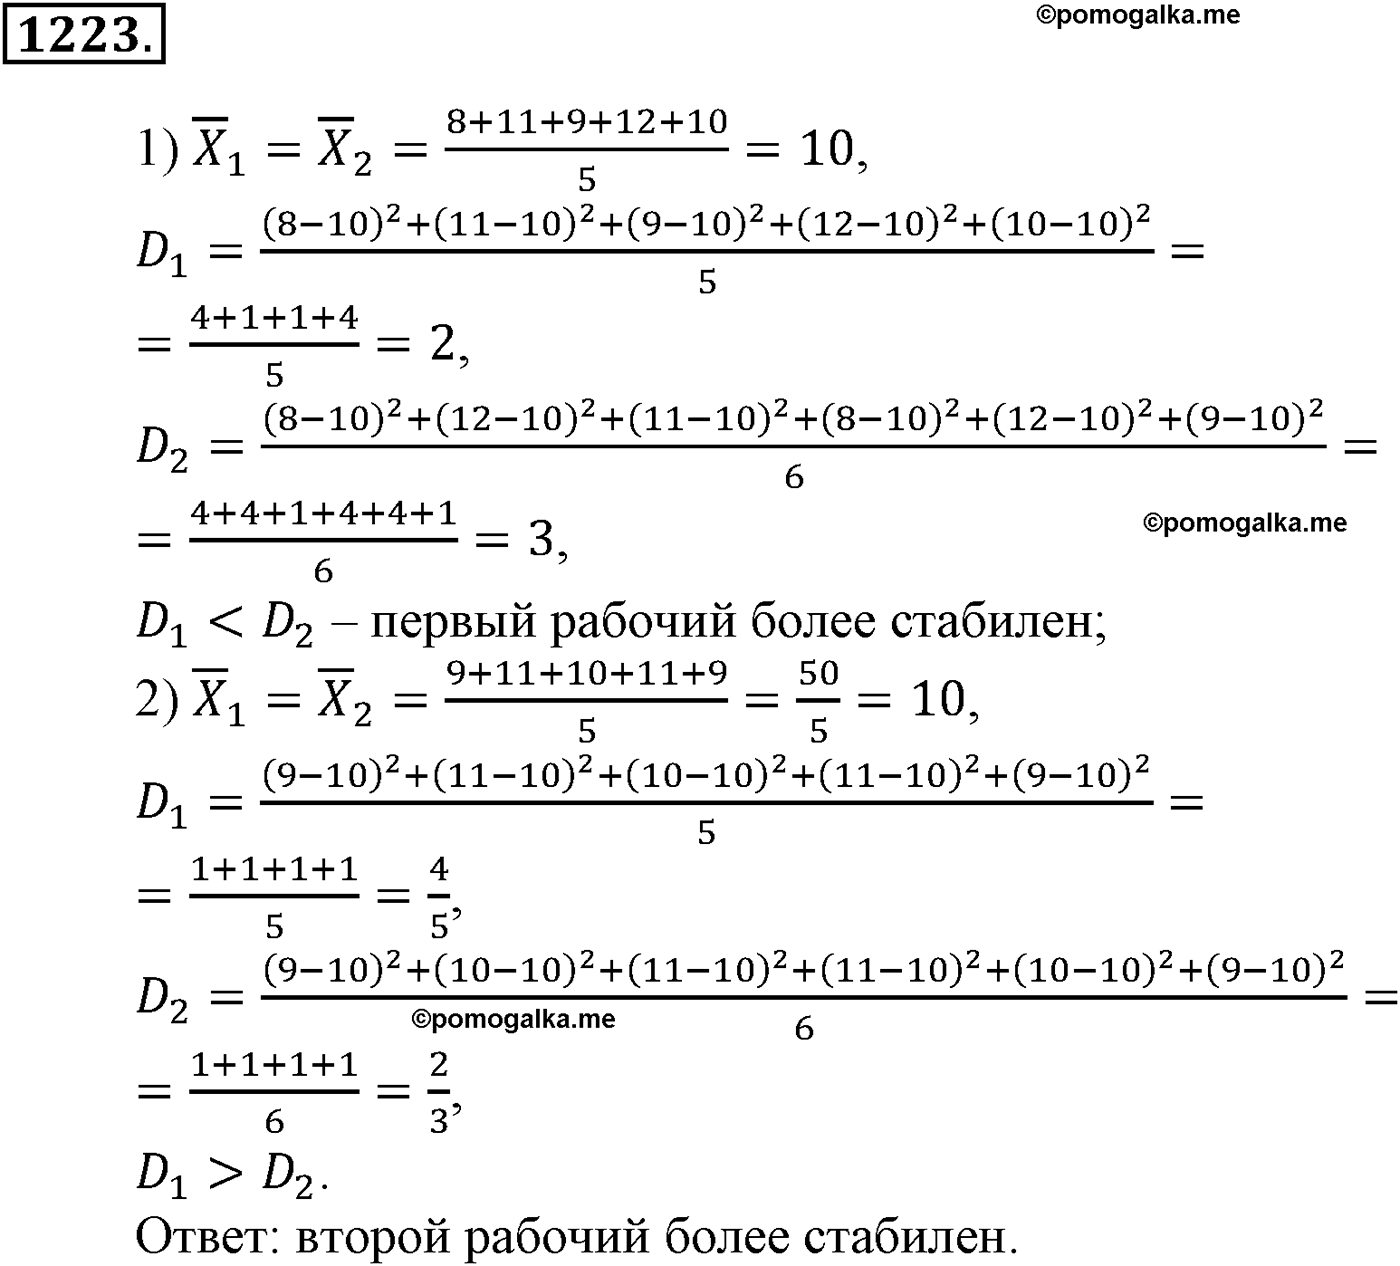 разбор задачи №1223 по алгебре за 10-11 класс из учебника Алимова, Колягина